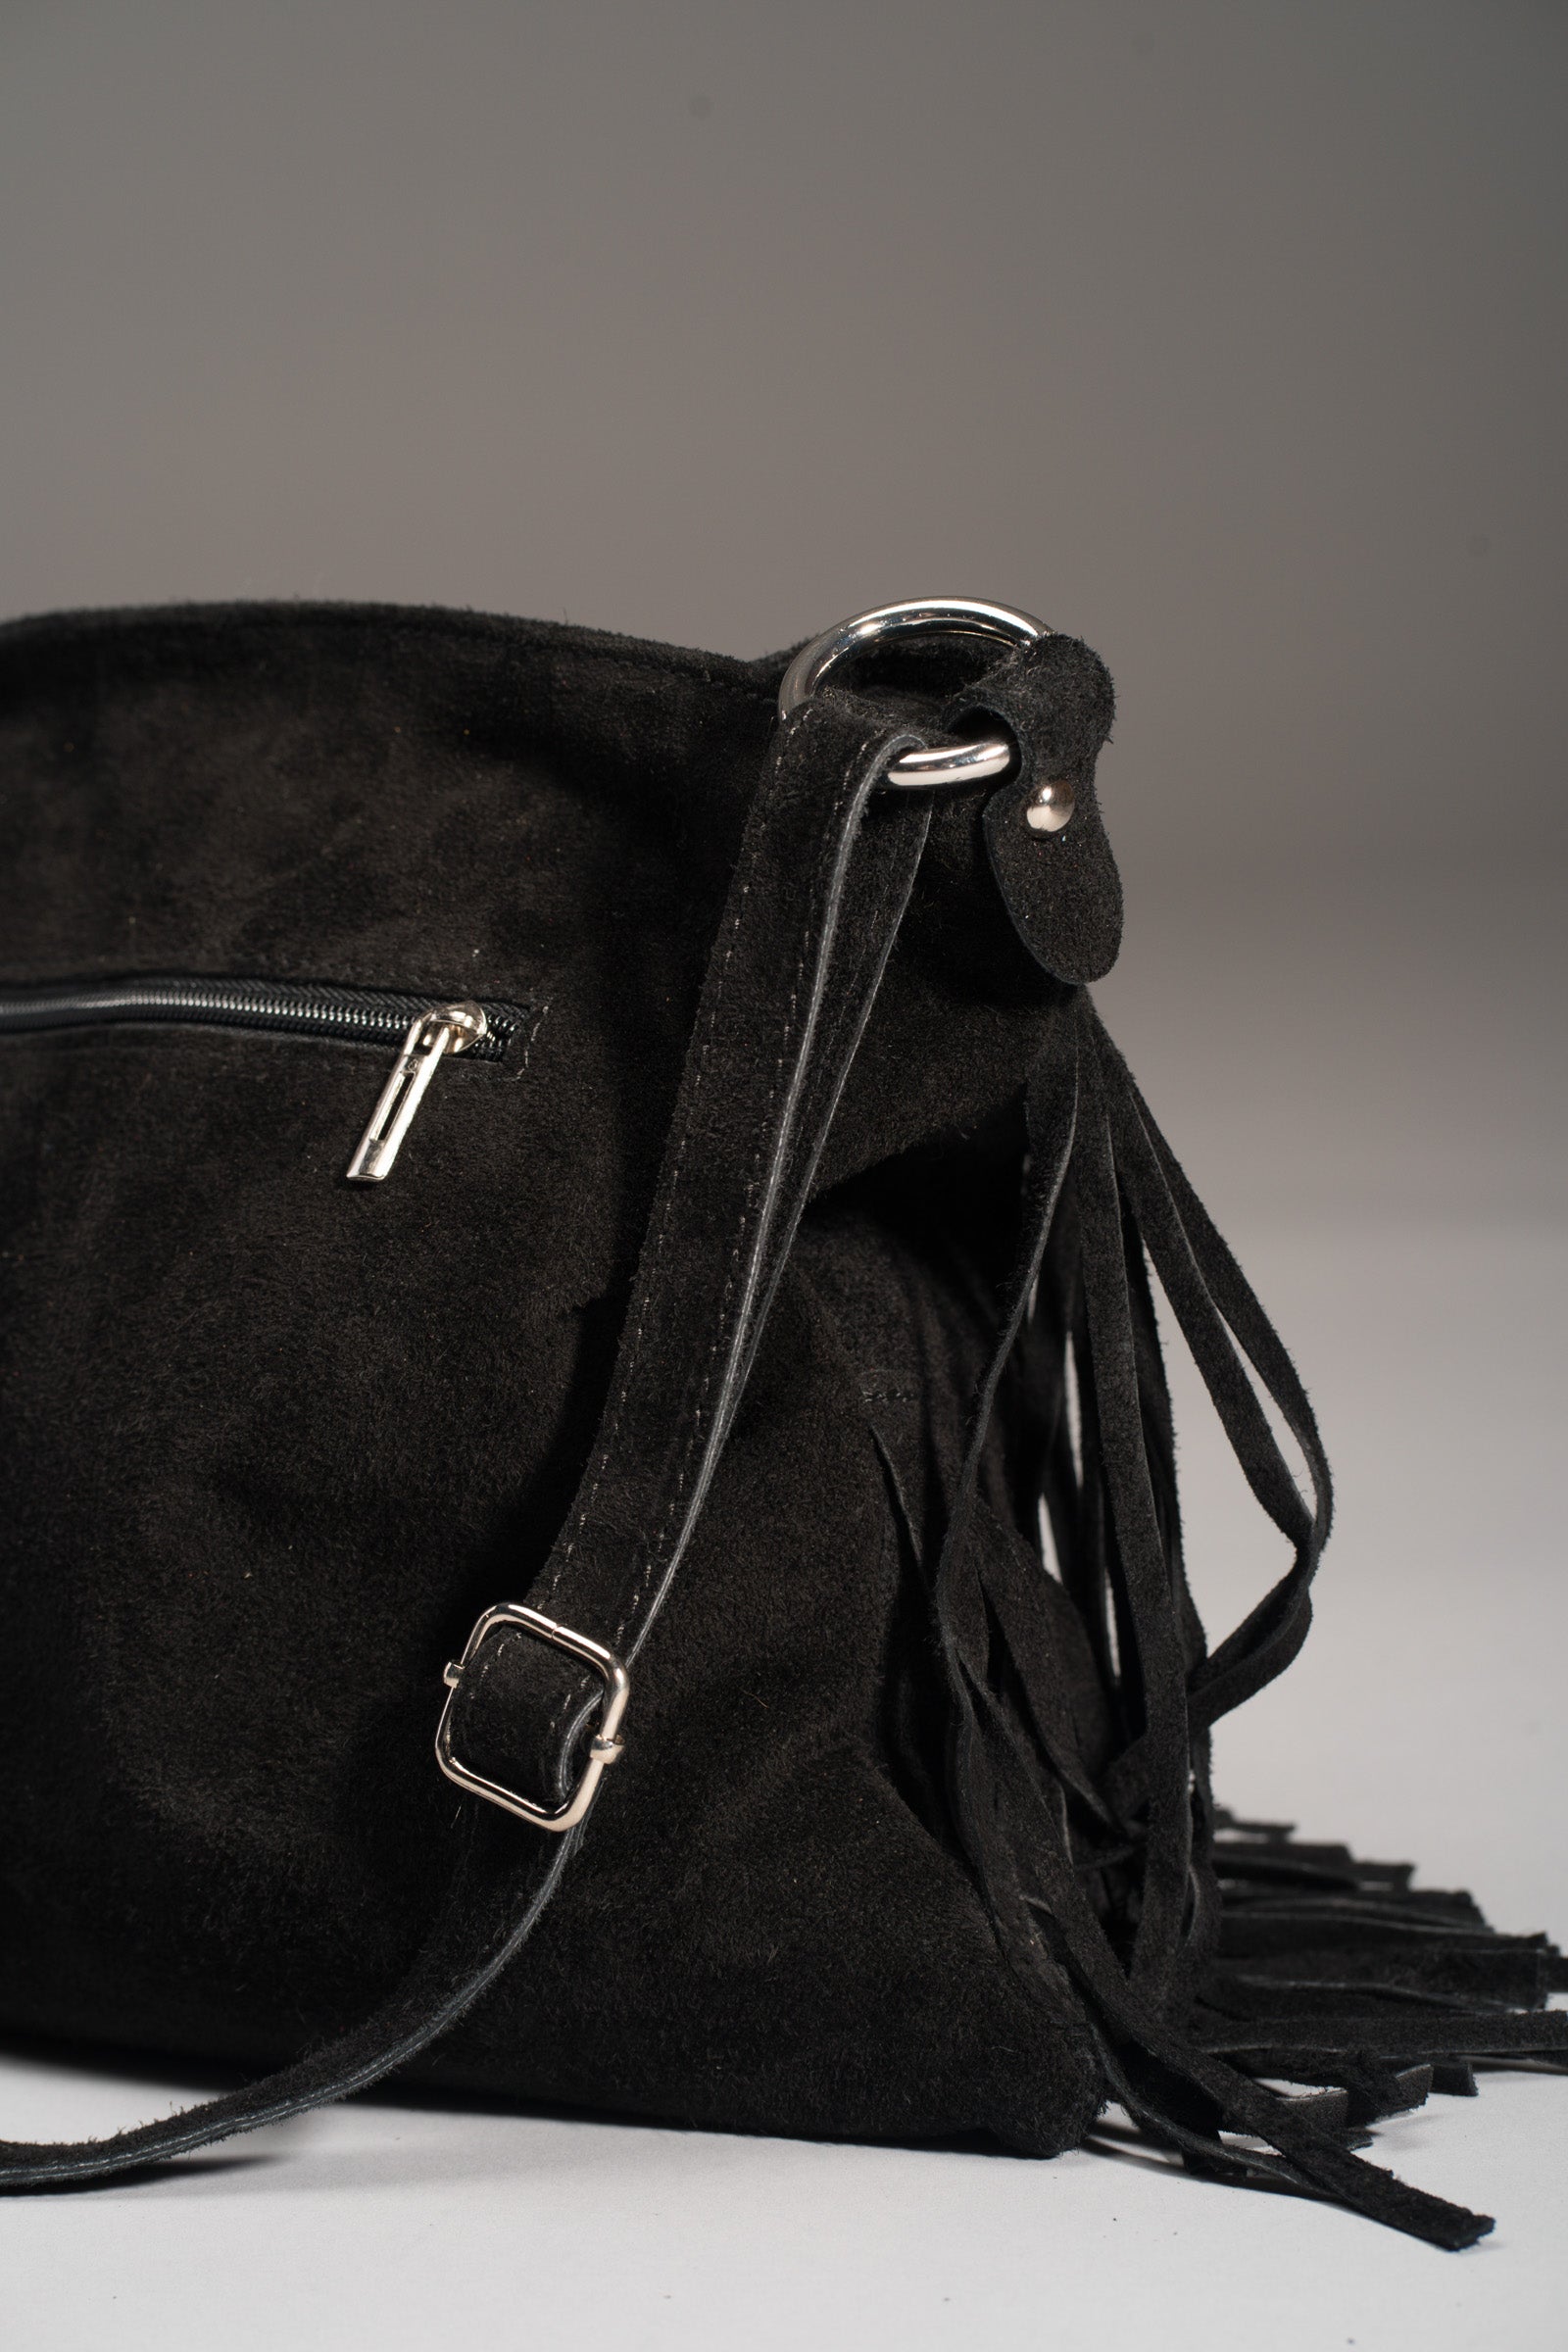 Buy Black Leather Fringe Crossbody Shoulder Bag Purse Online in India - Etsy